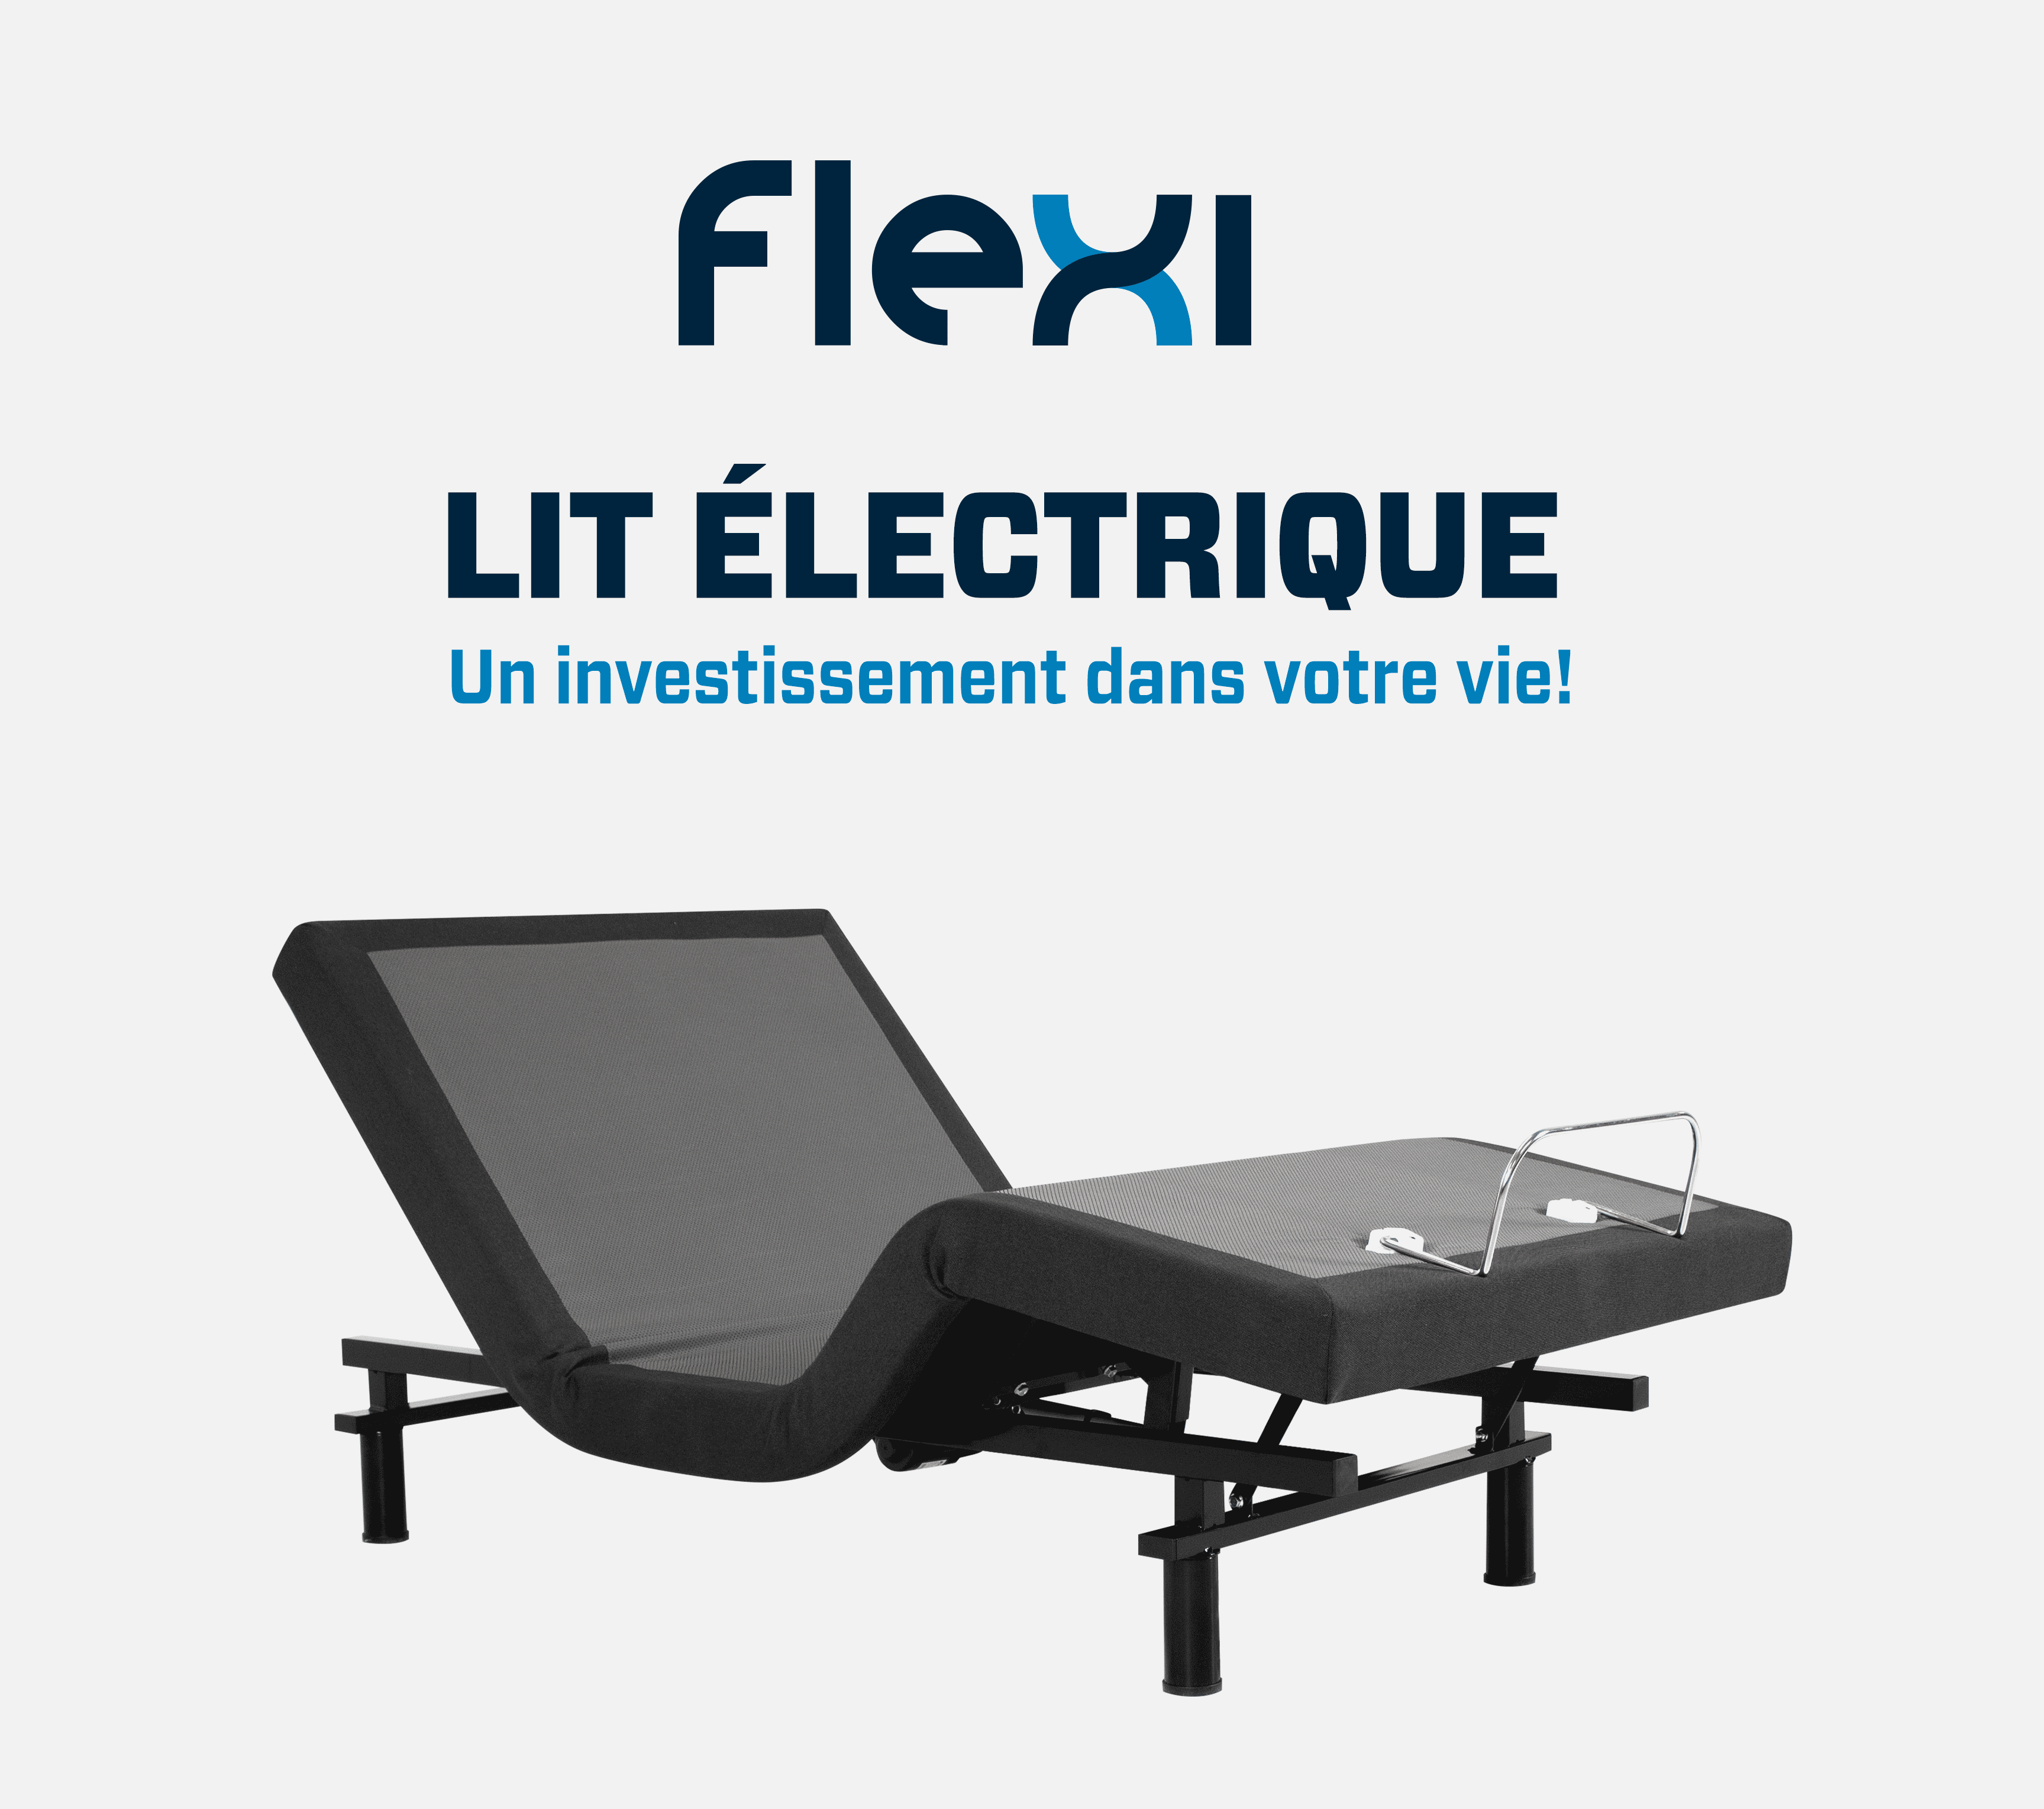 FLEXI, lit électrique